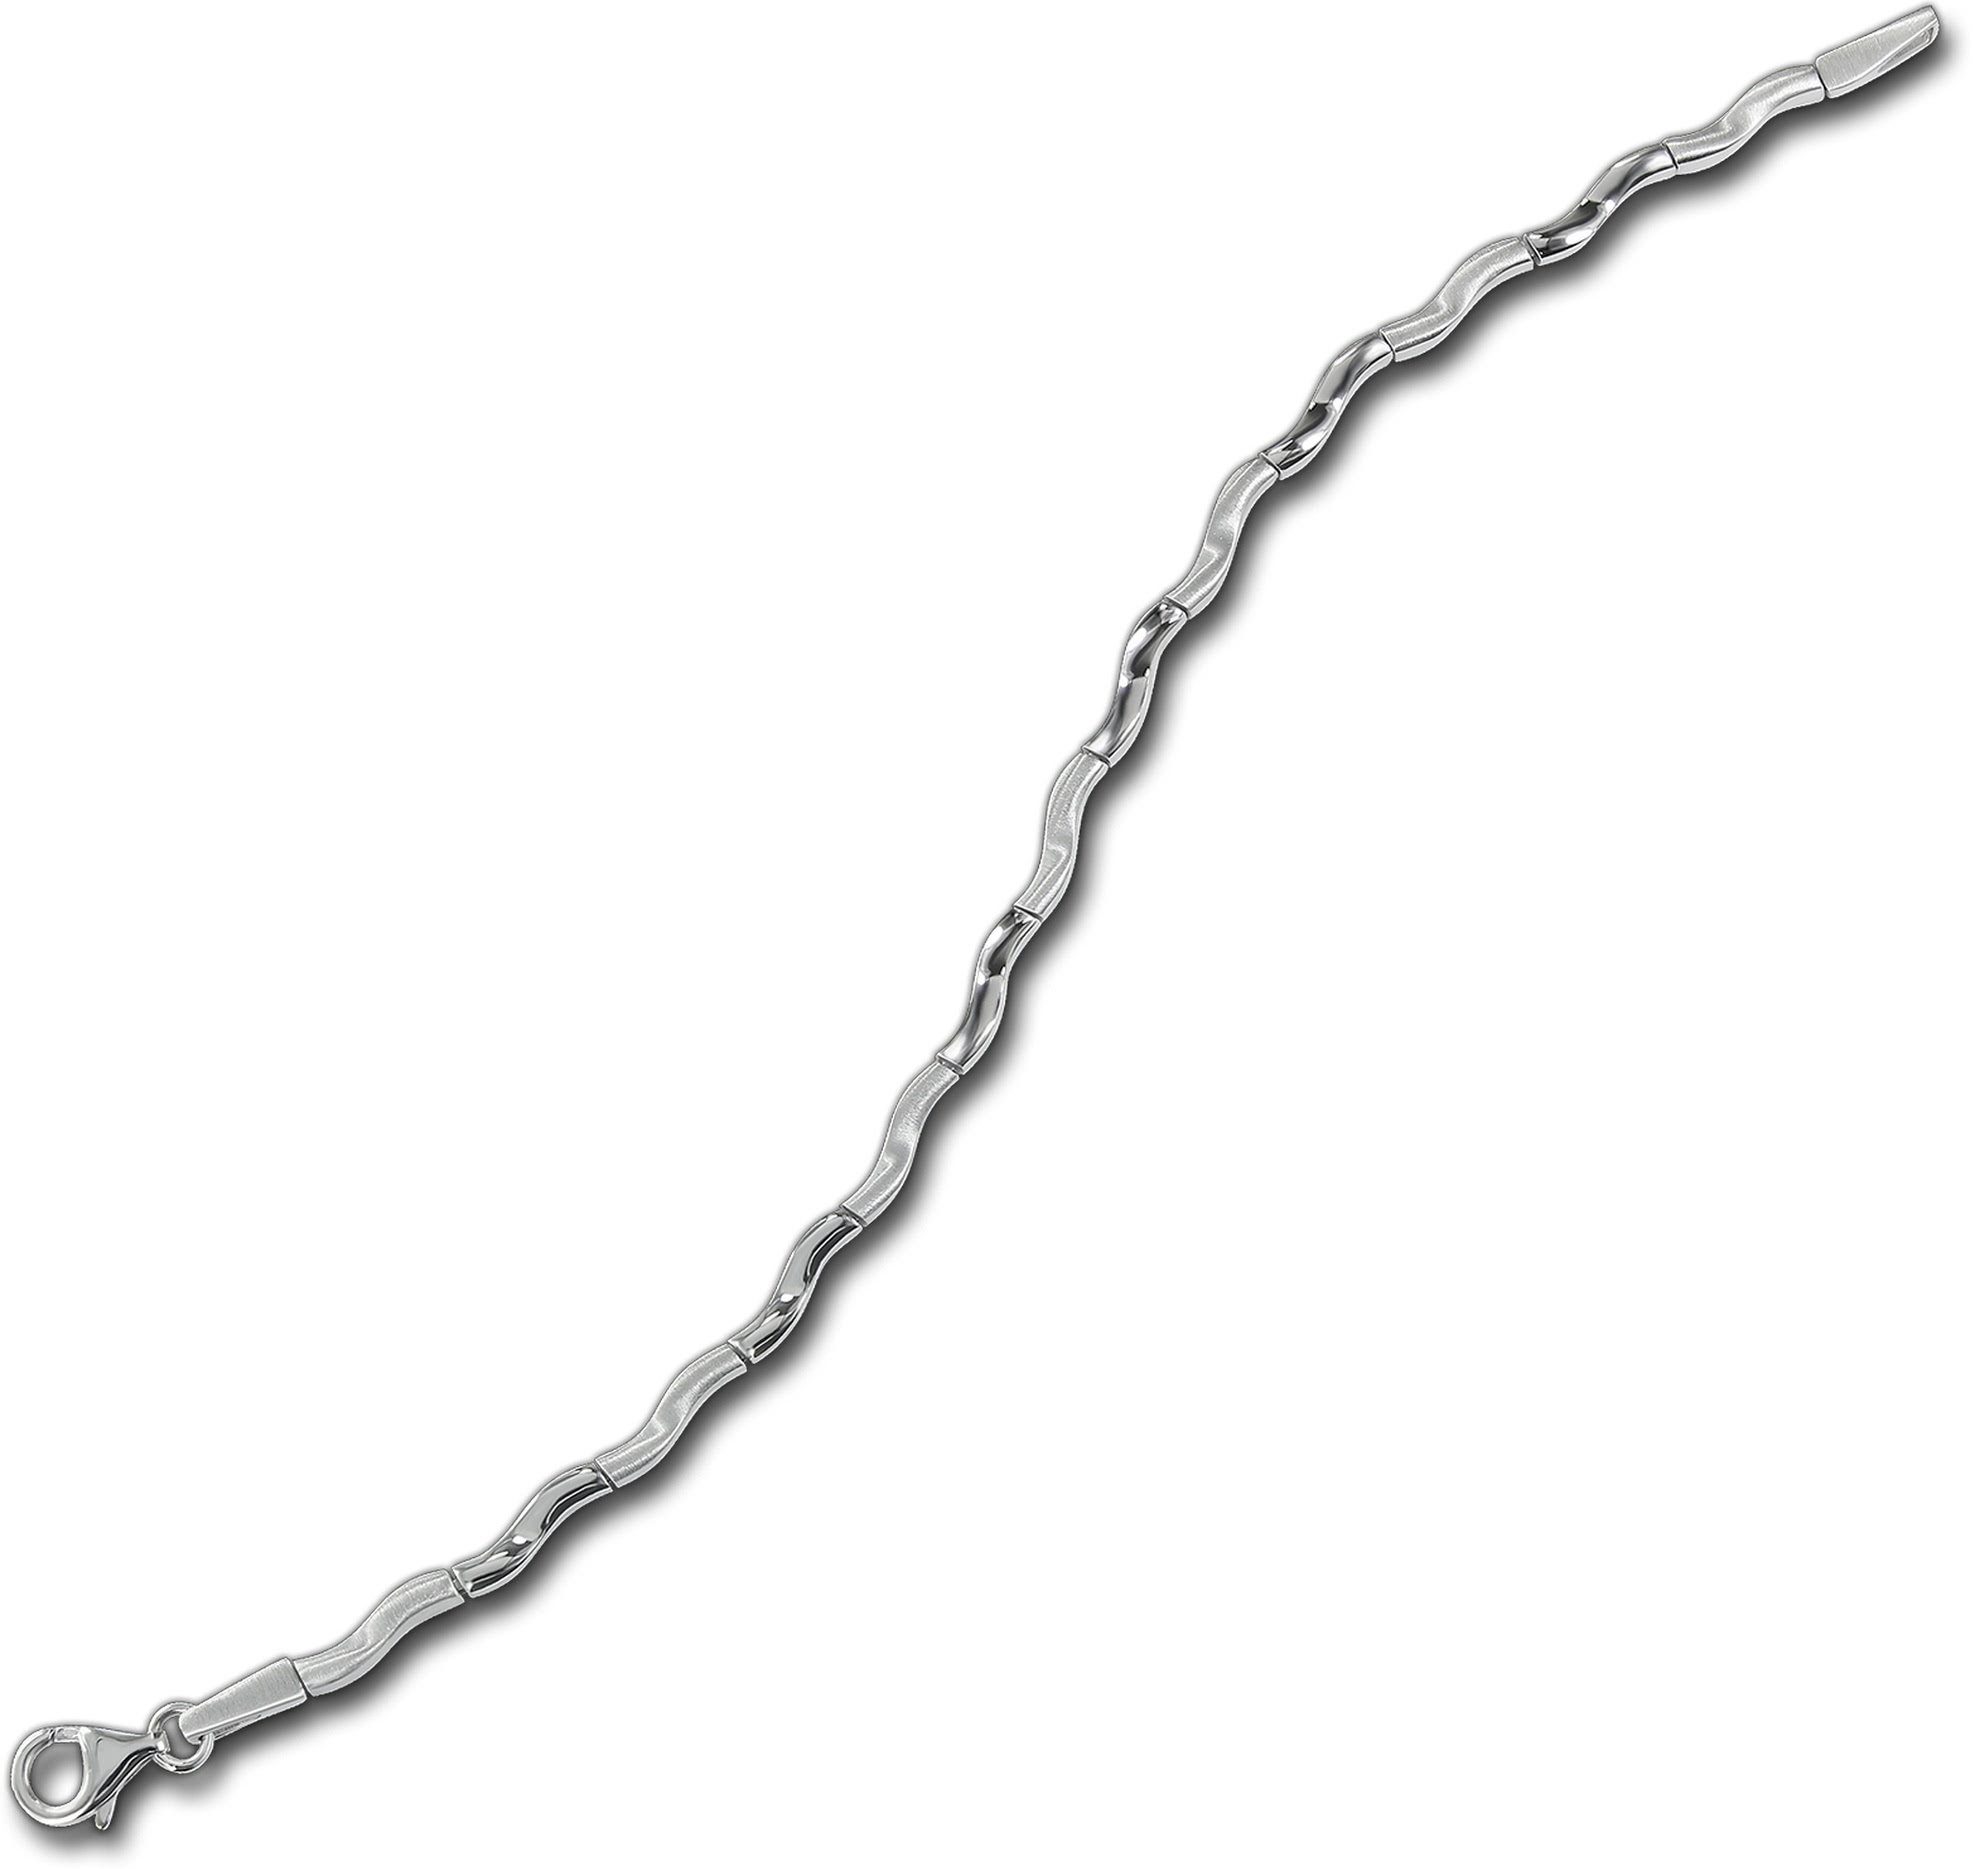 925 Balia mattiert für Silber Balia Armband (Armband), 18,9cm, (Welle) ca. Silberarmband Armband Damen Silber